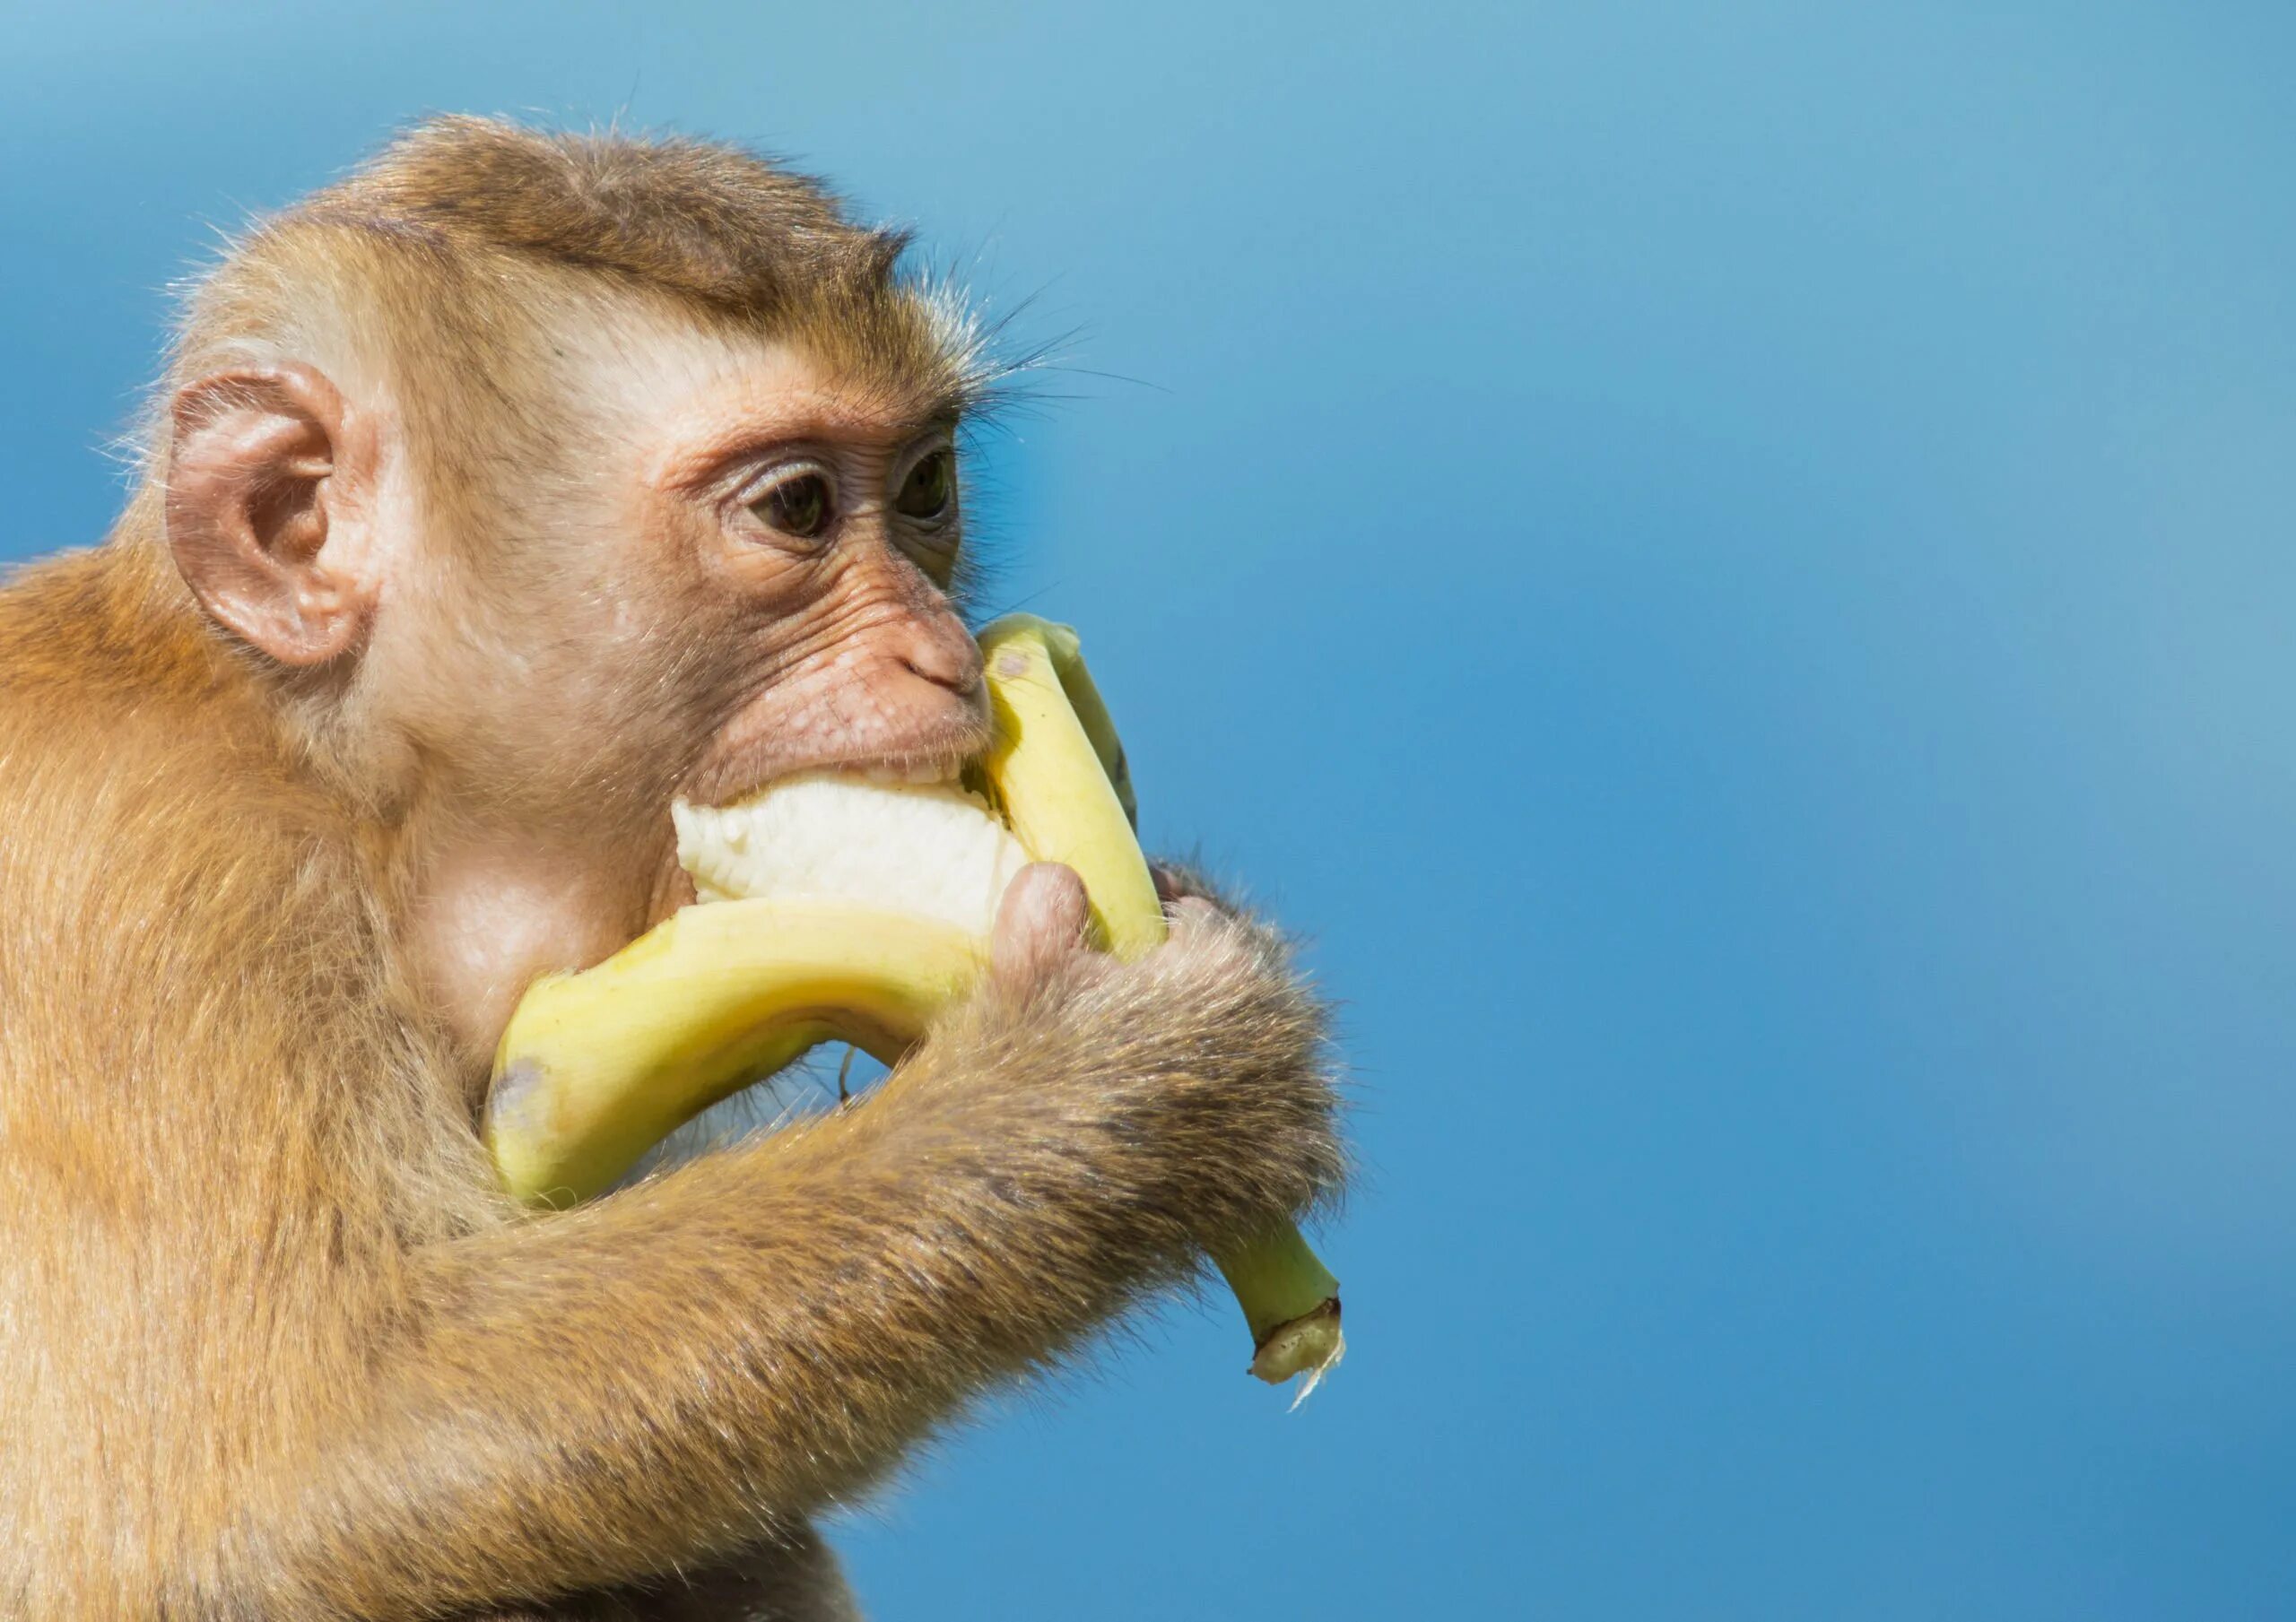 Макака с бананом. Обезьяна кушает банан. J,tpmzyf c ,fuyfyfvb. Фото обезьяны с бананом. Про обезьян и бананы